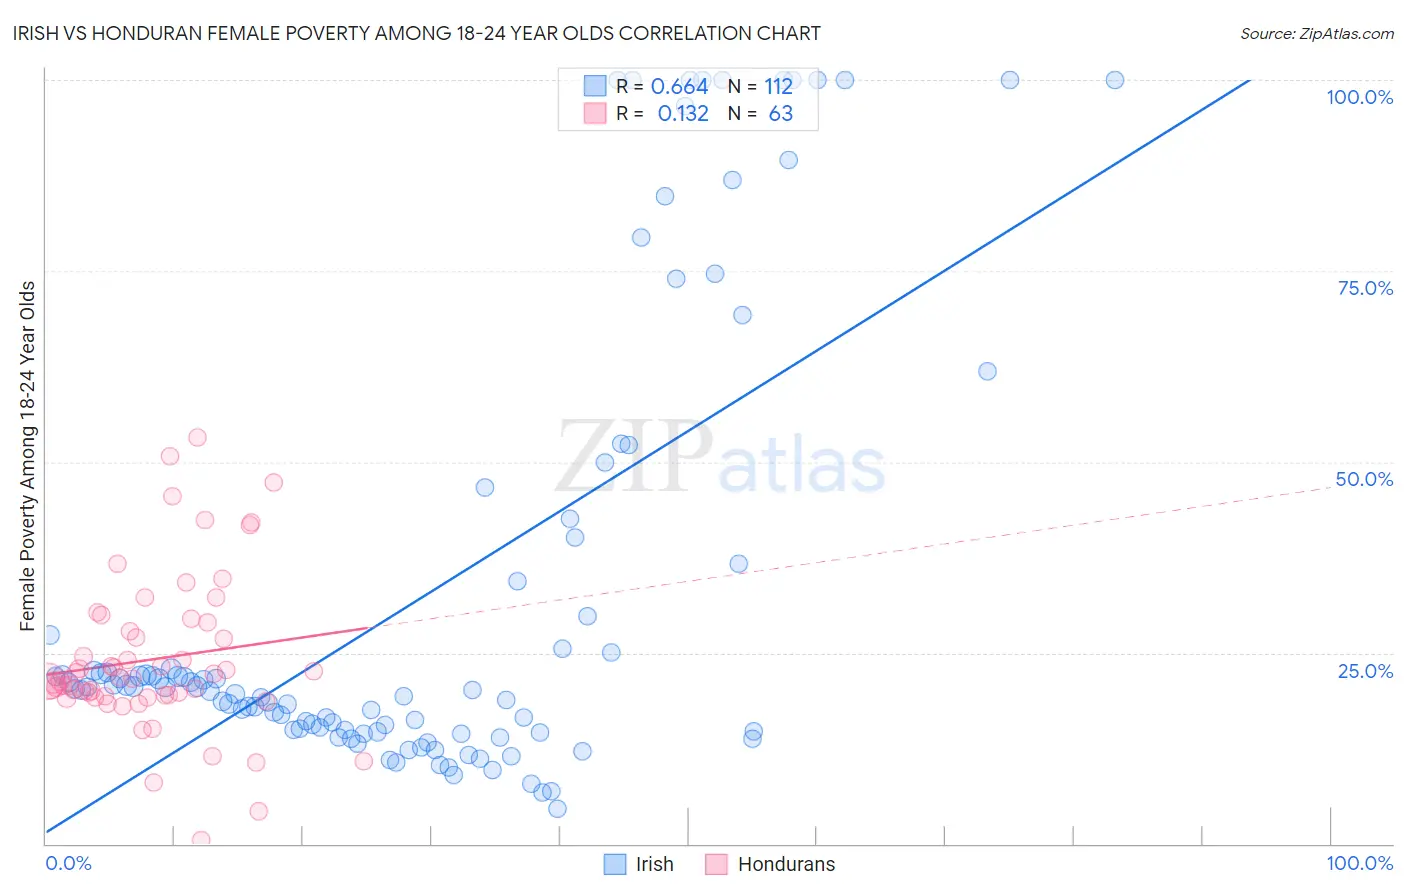 Irish vs Honduran Female Poverty Among 18-24 Year Olds